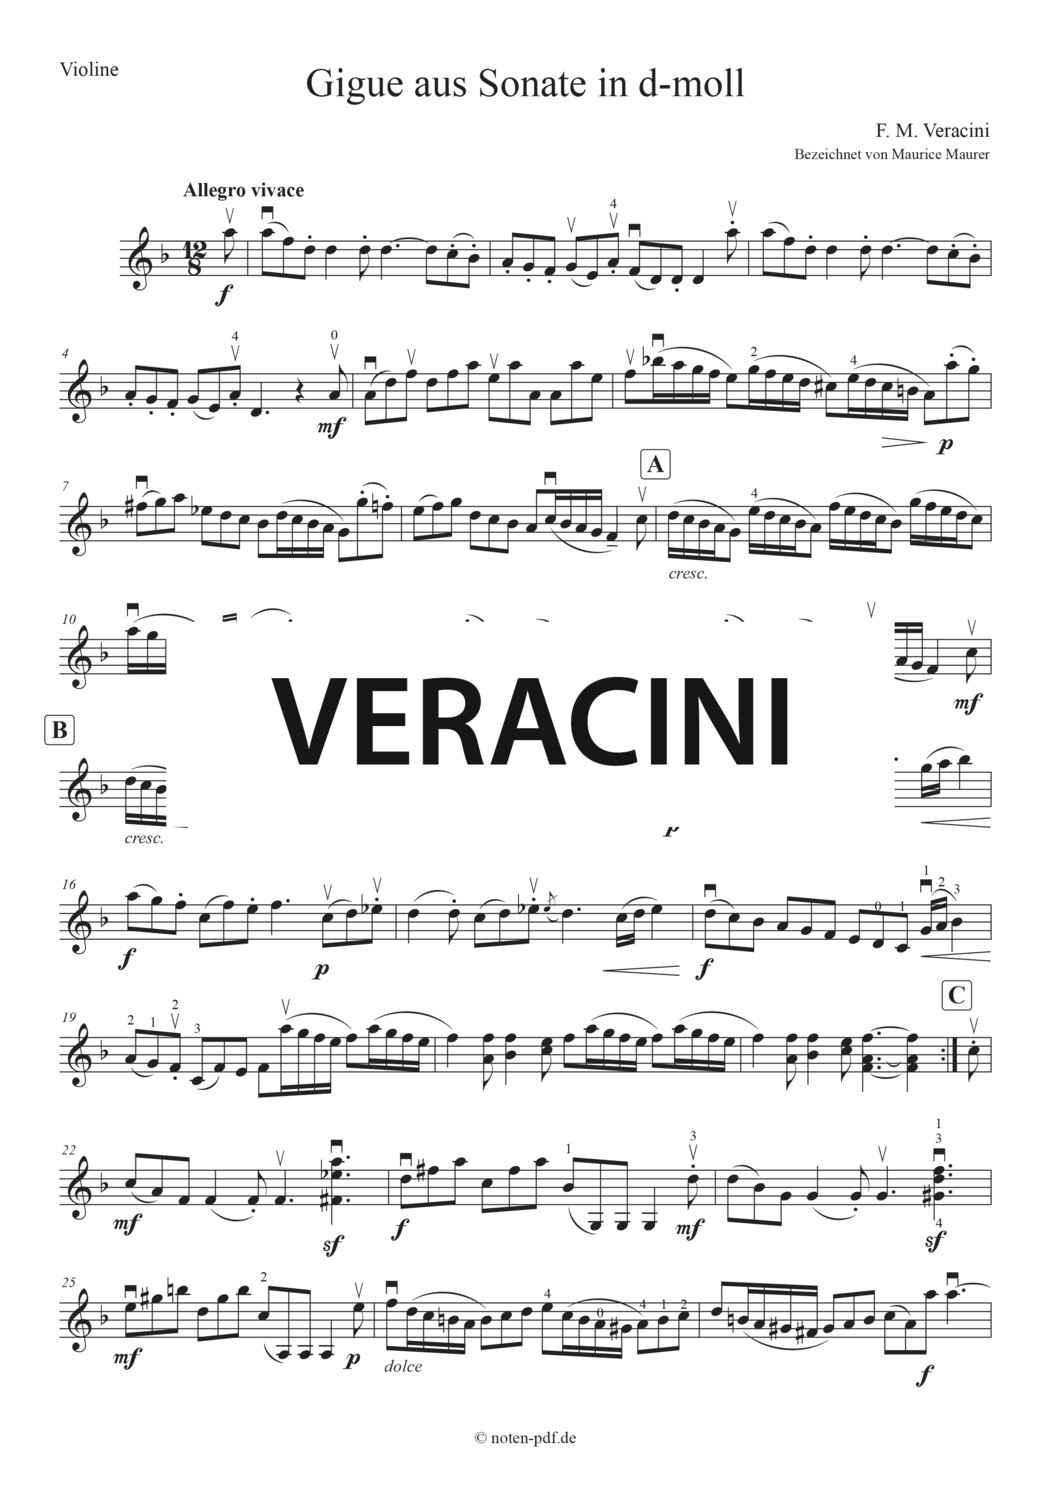 Veracini: Sonate in D minor. 4. Movement "Gigue"